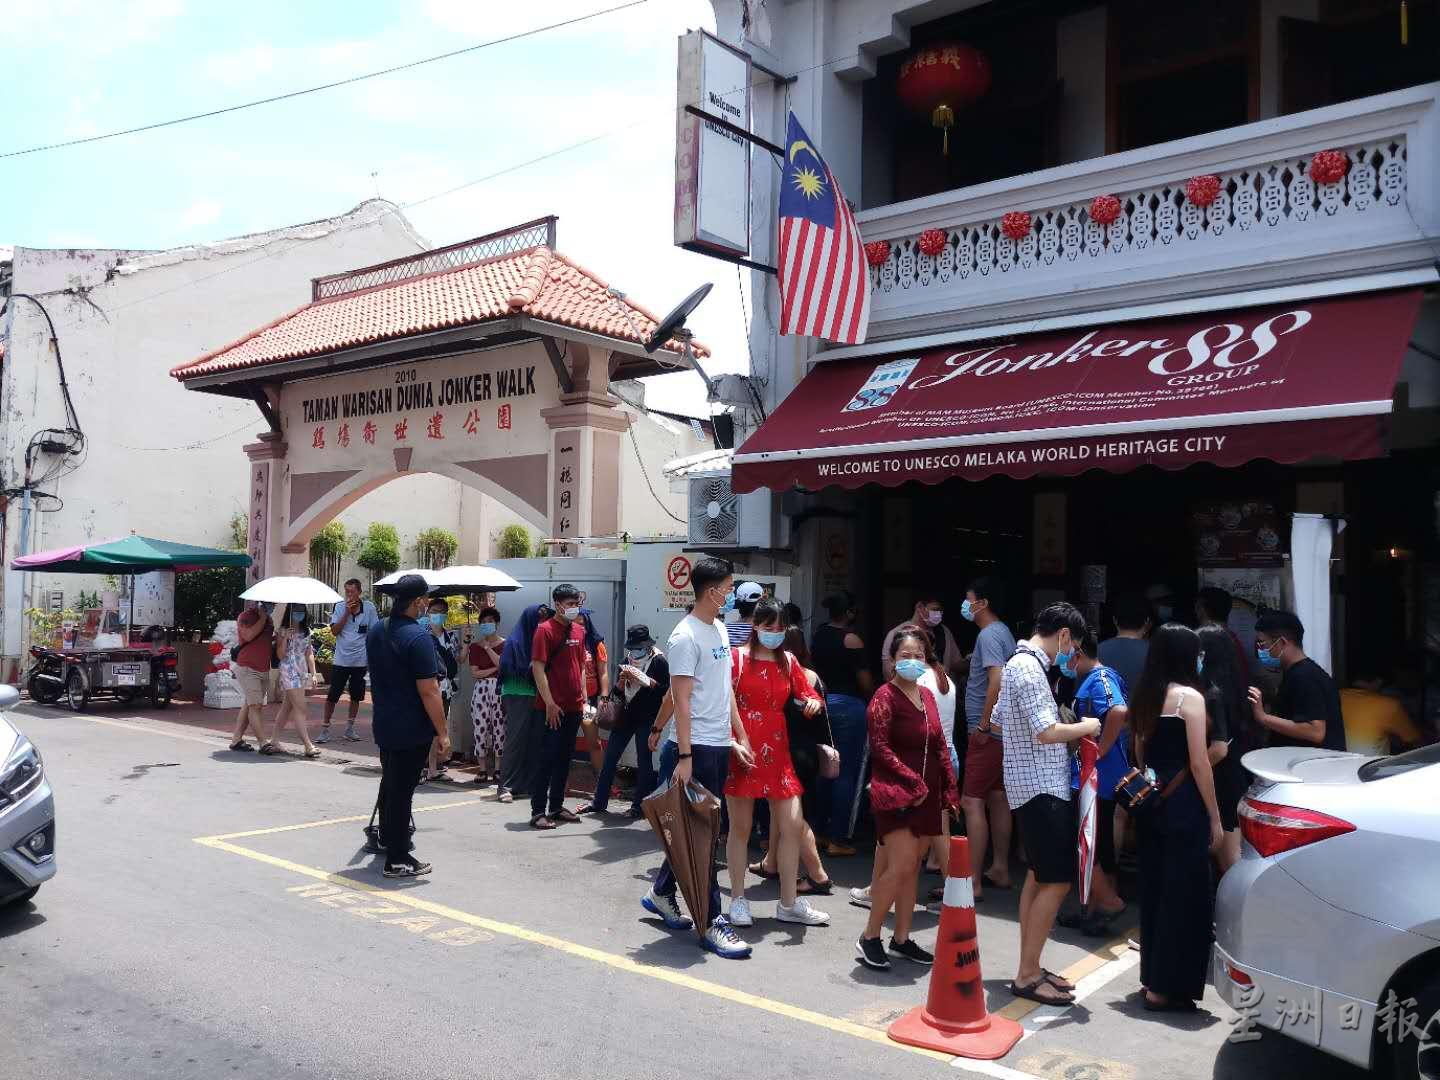 鸡场街一些小吃店外，排满了人等着进去品尝美食。